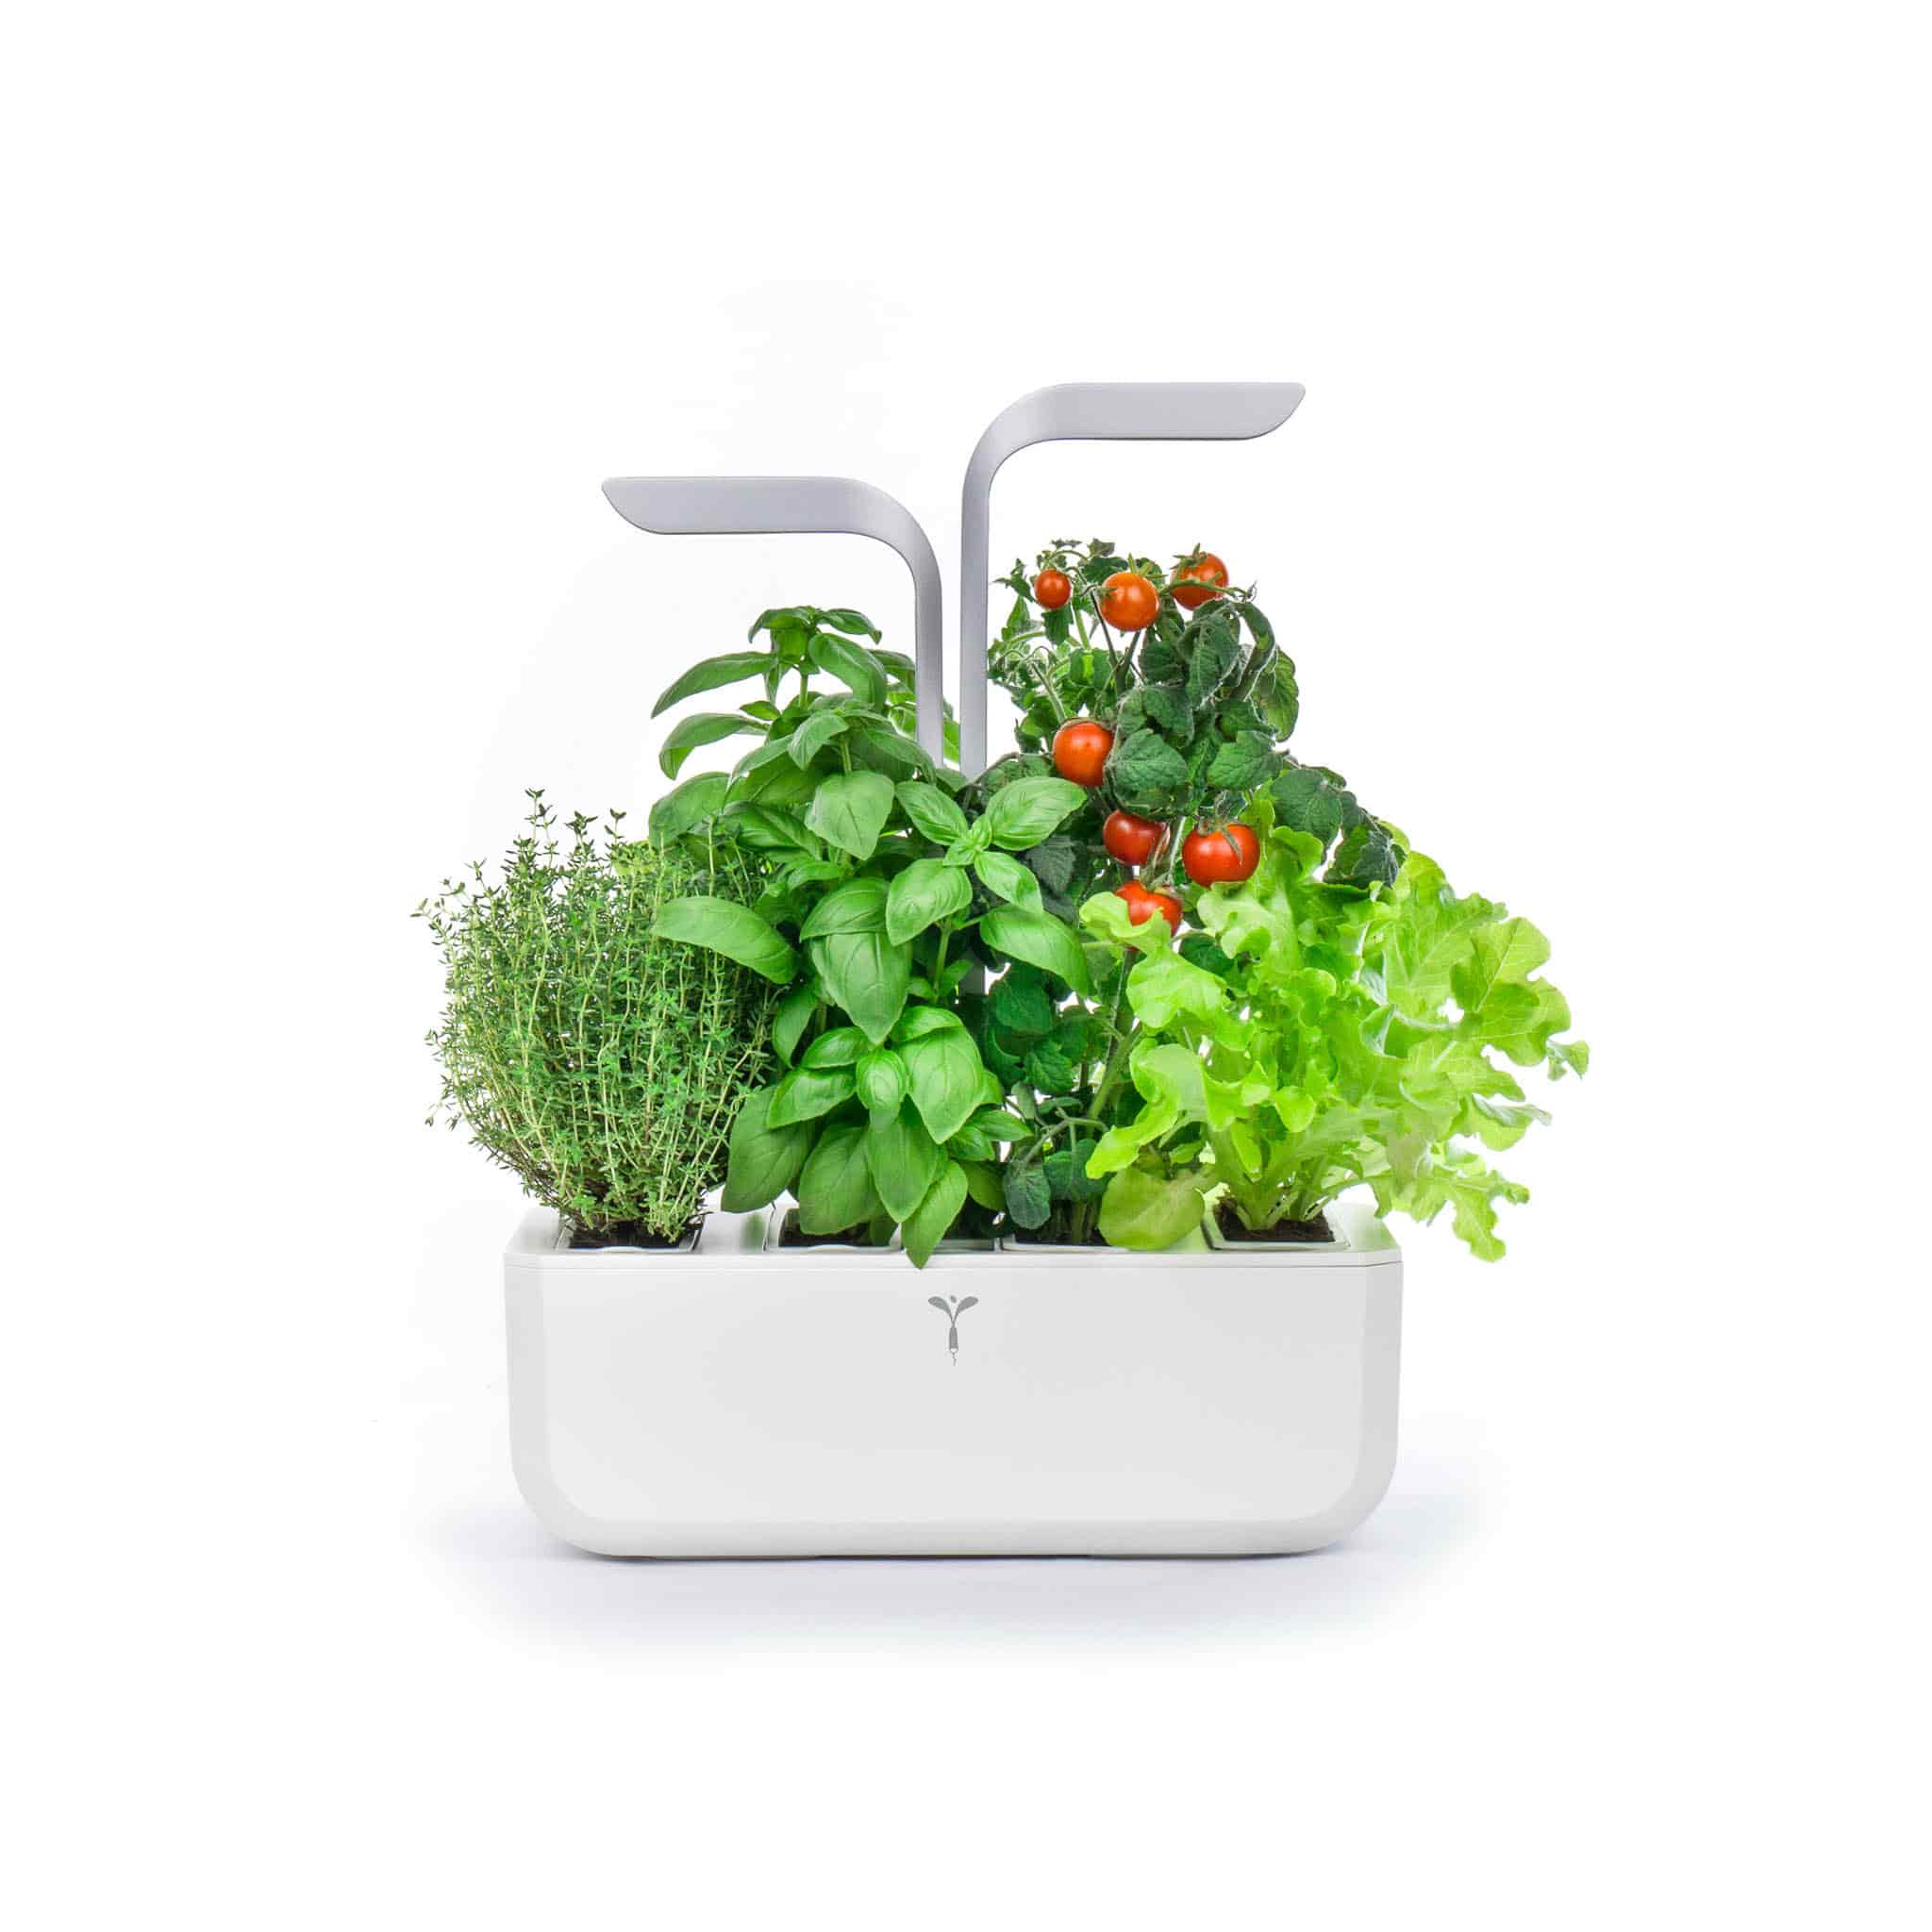 Veritable Classic Smart Indoor Herb Garden, White